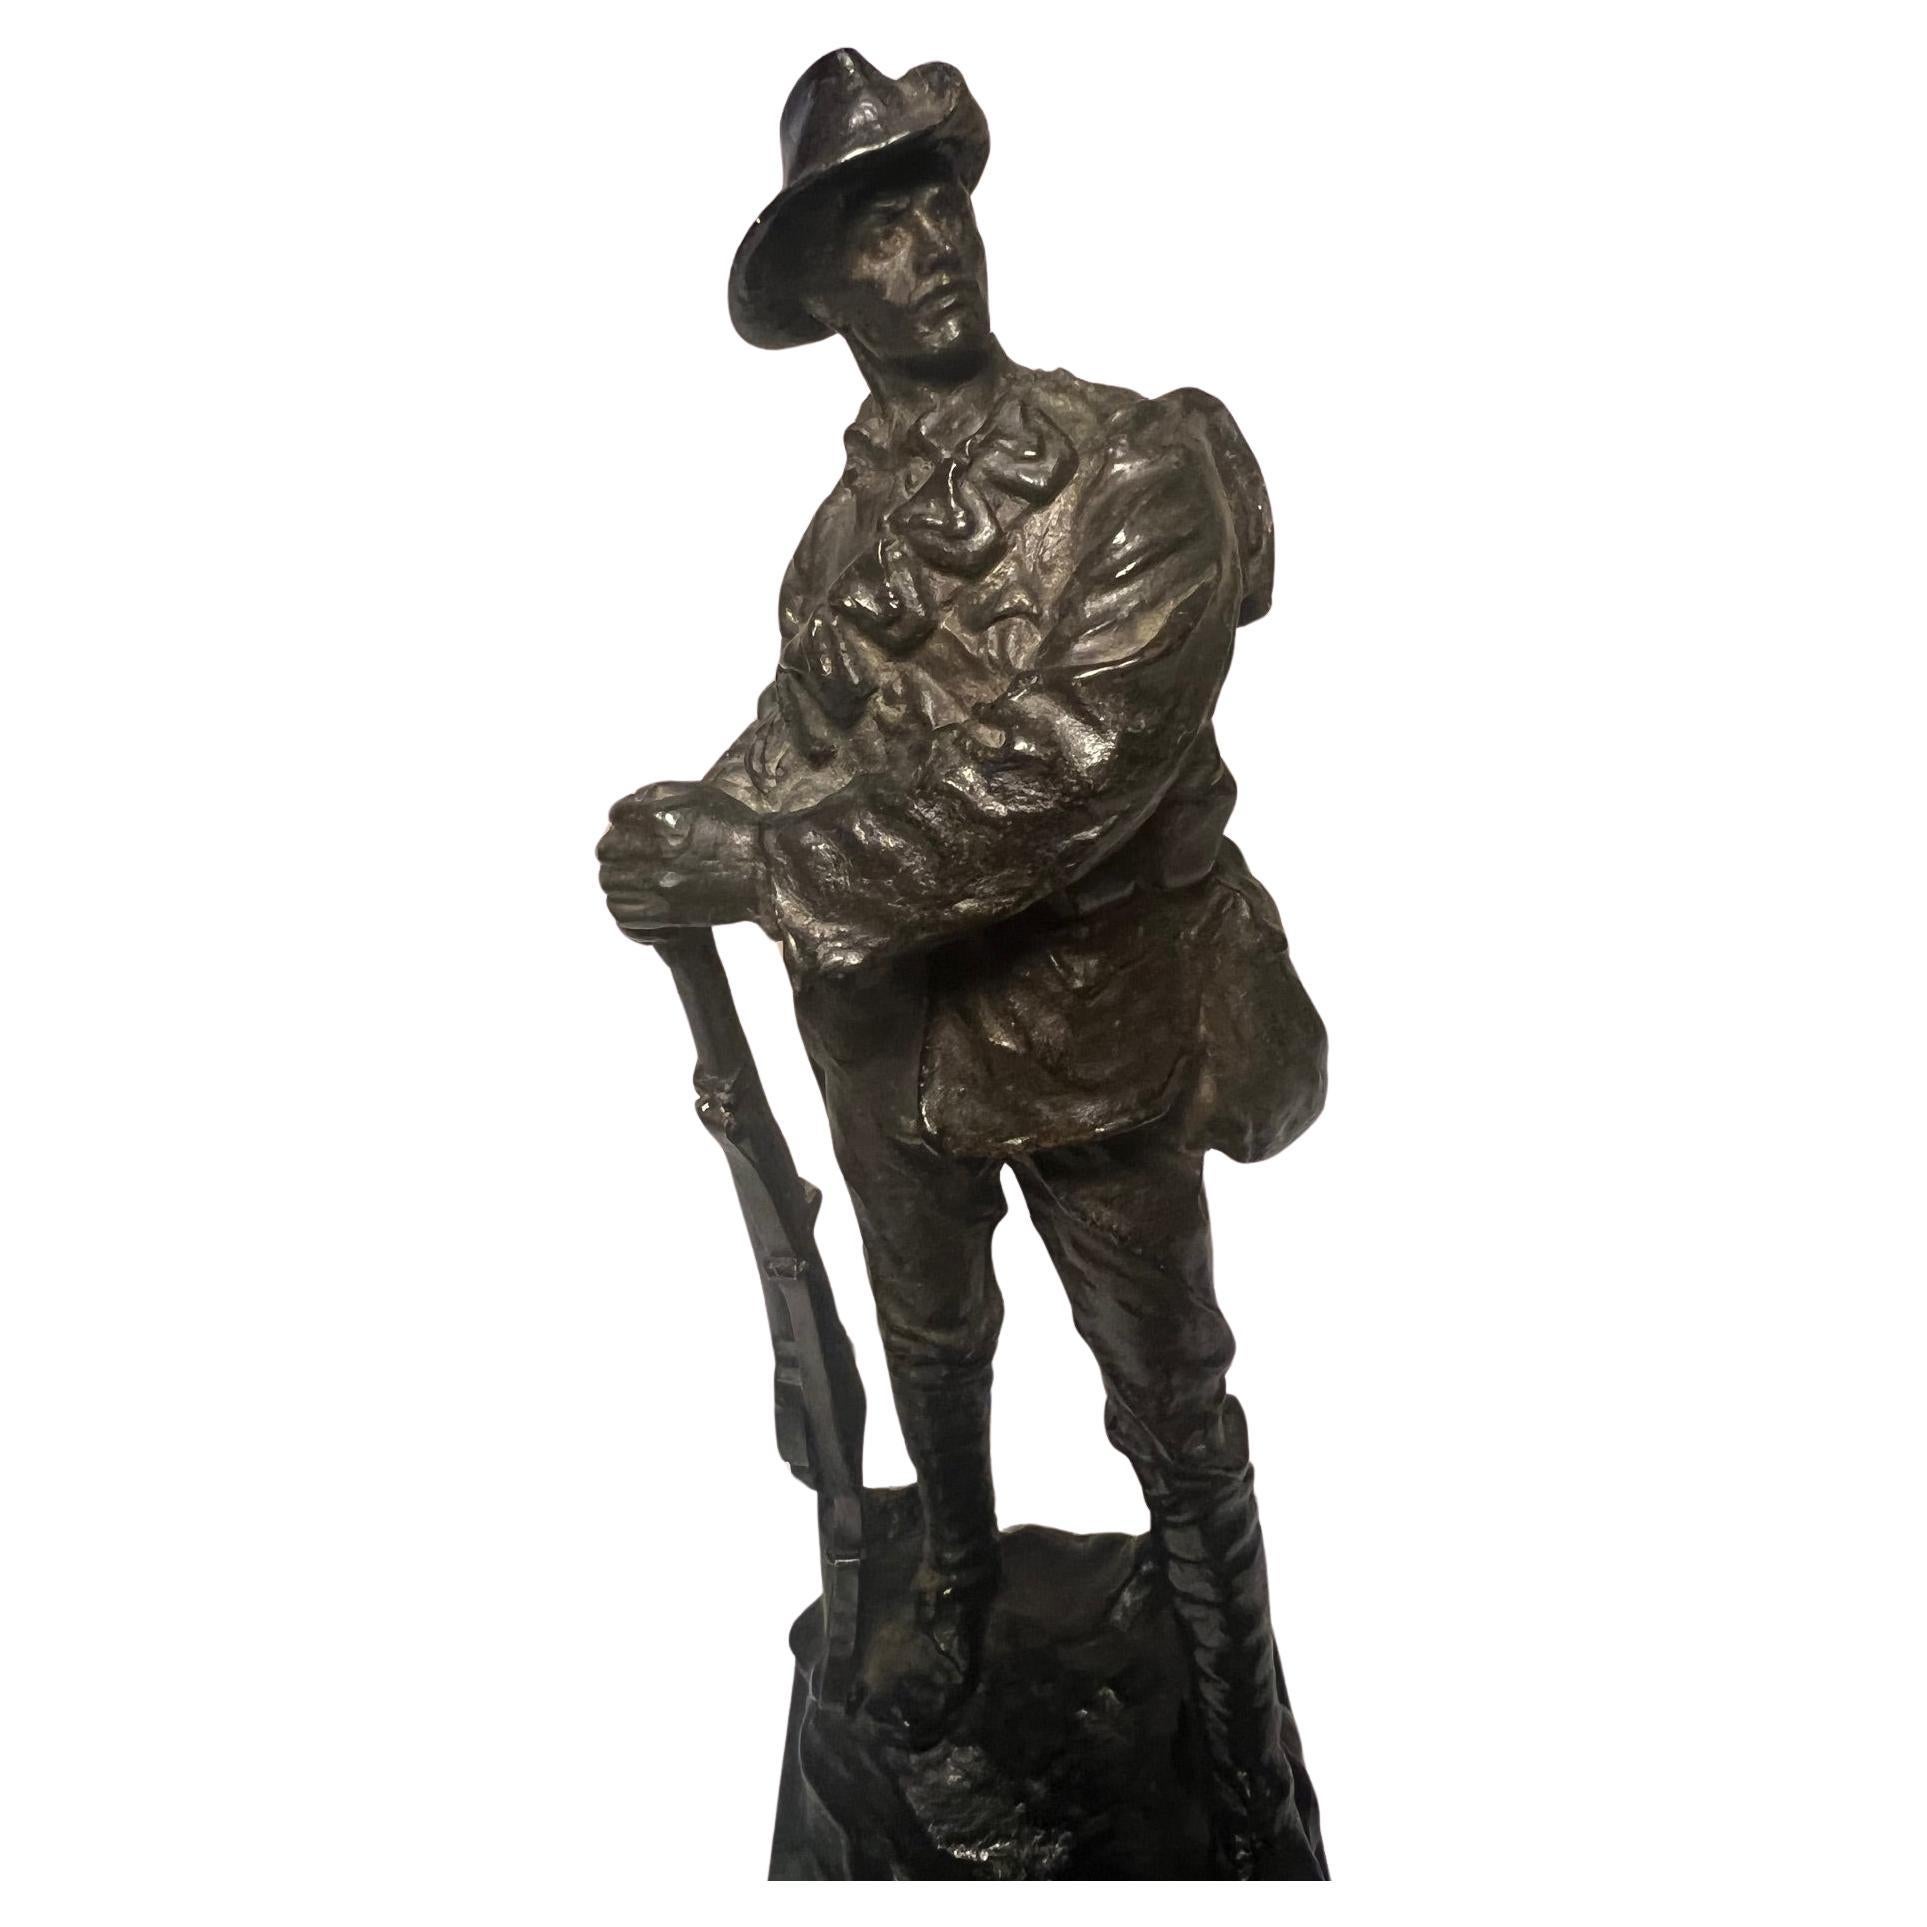 Impresionante estatua de un soldado de infantería australiano, patinado original y bien modelado.

Del conocido escultor inglés Leonard Stanford Merrifield. (1880-1943).